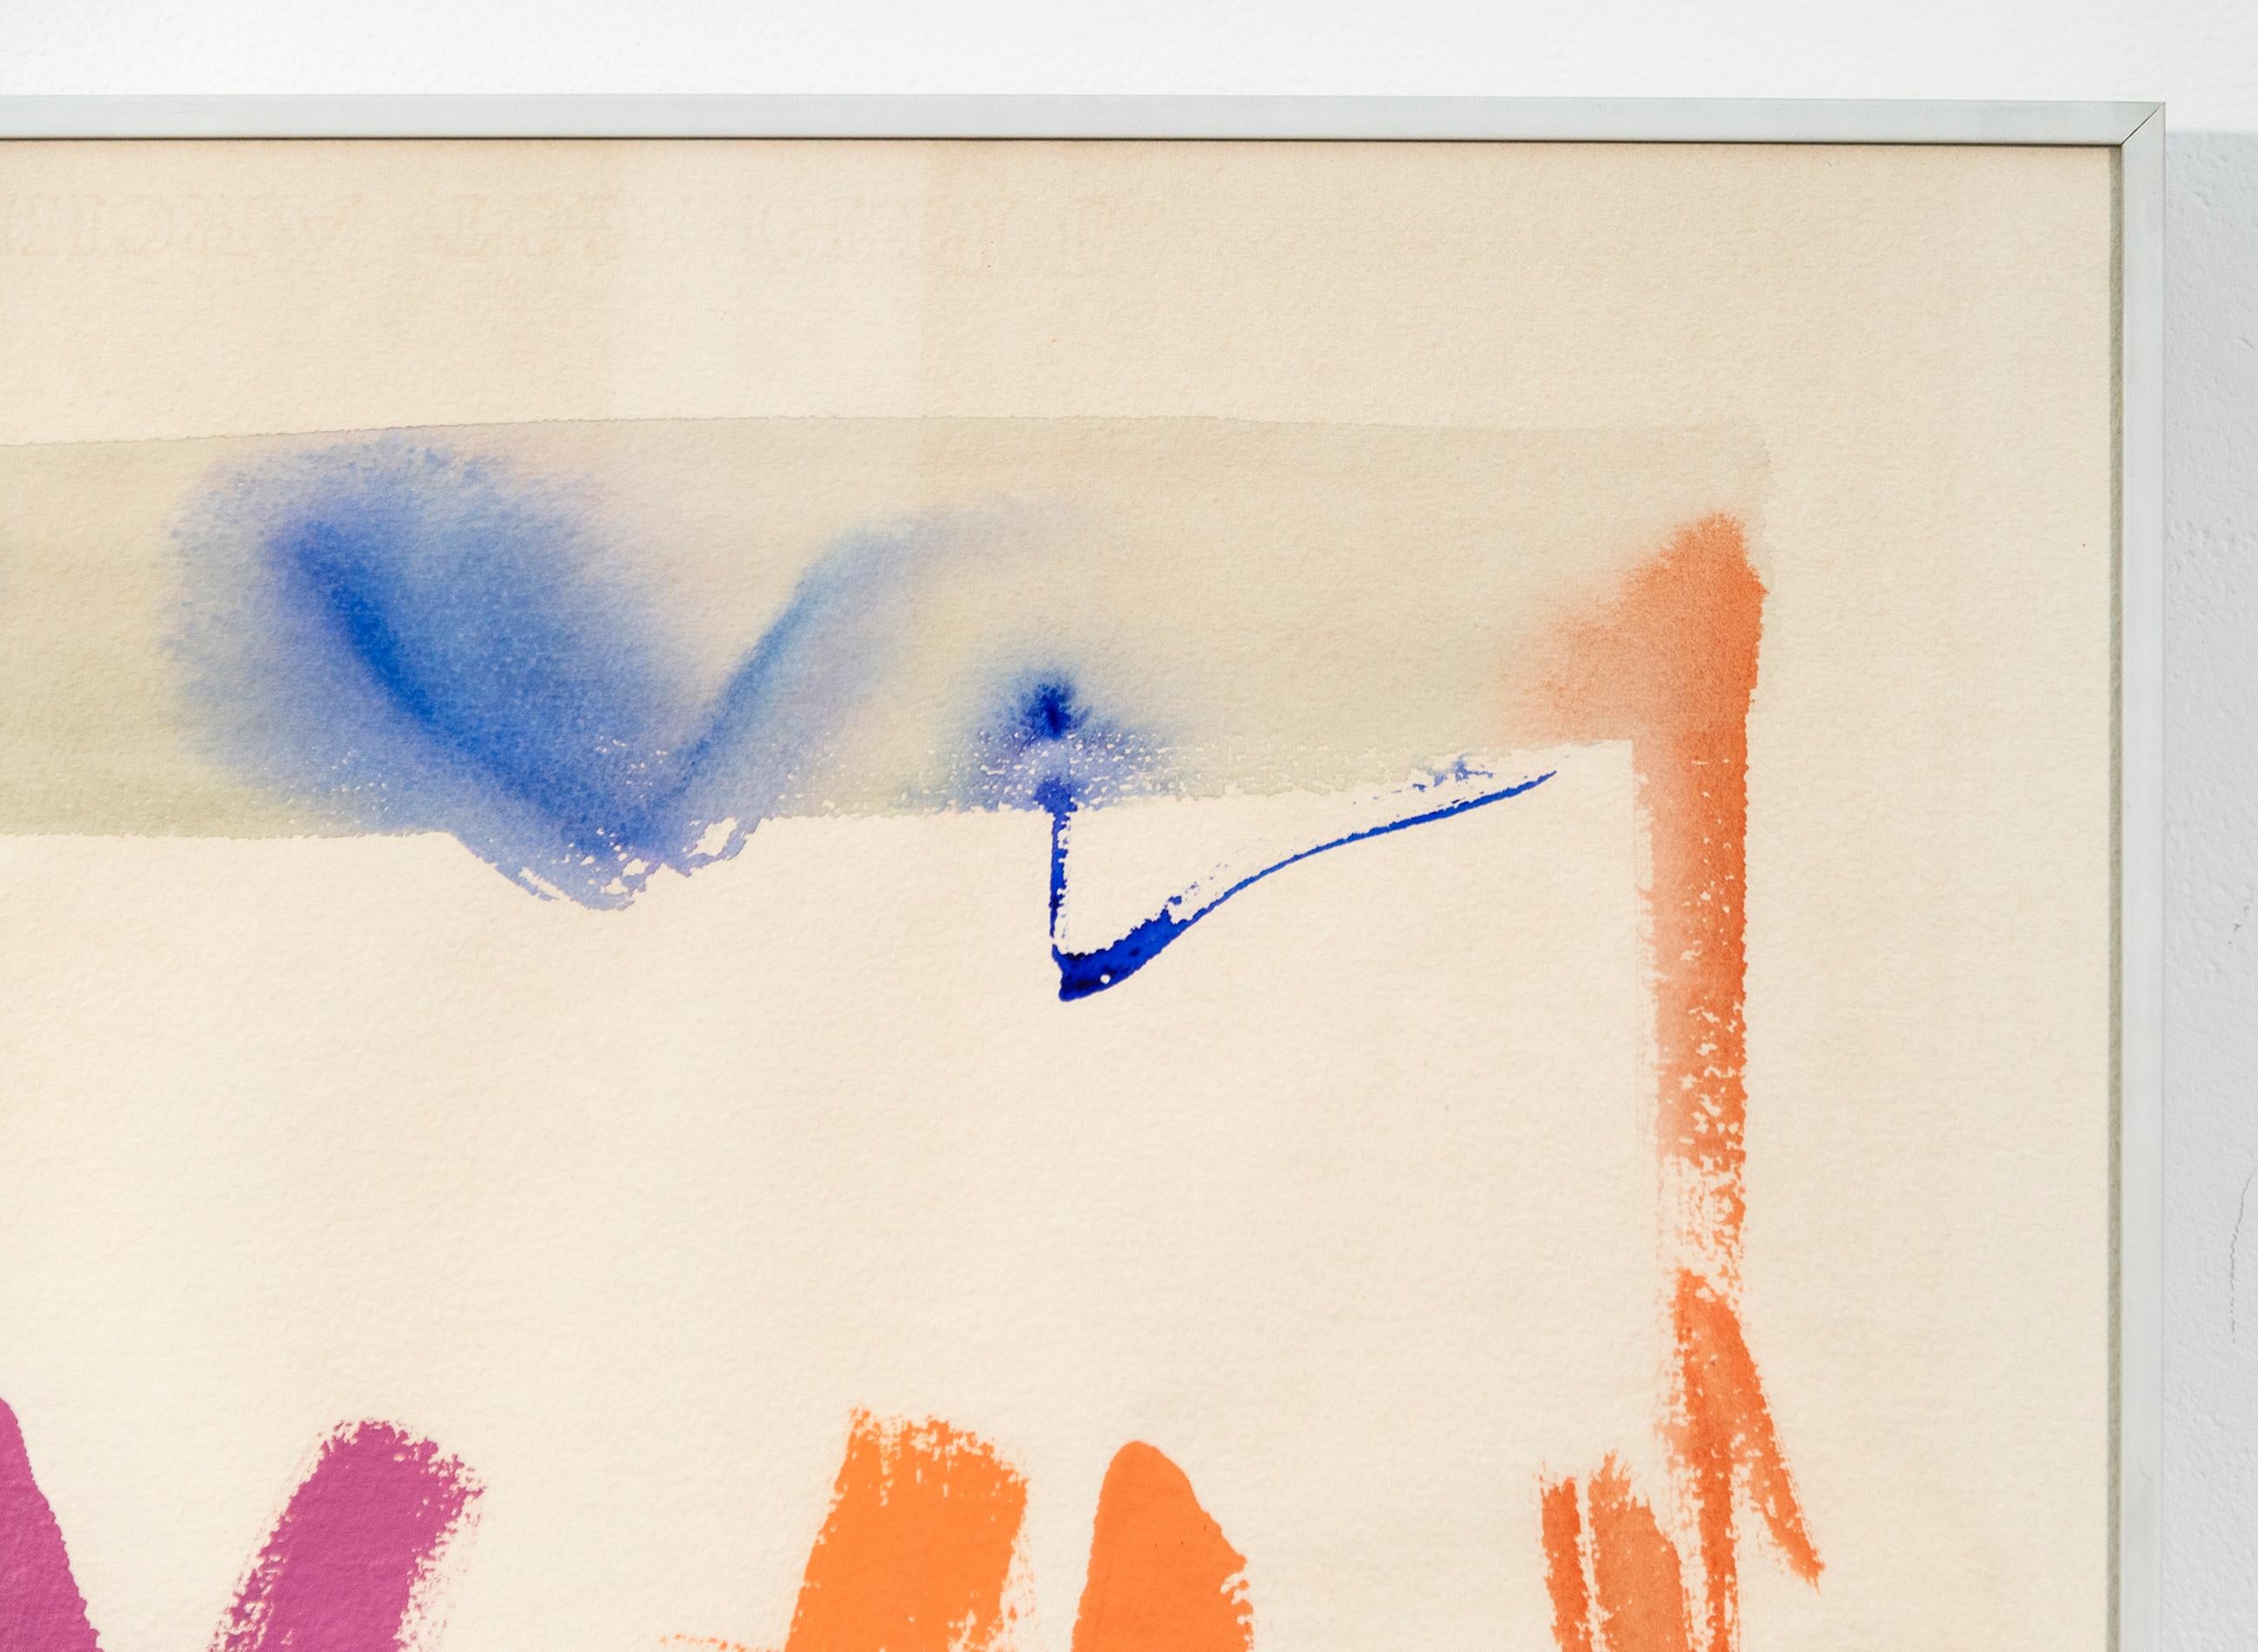 In diesem ausdrucksstarken, farbenfrohen abstrakten Bild von Milly Ristvedt scheint eine Melange von Komplementärfarben über das Papier zu tanzen. Ristvedt ist eine meisterhafte Koloristin, und dieses Gemälde aus den siebziger Jahren zeigt ihr